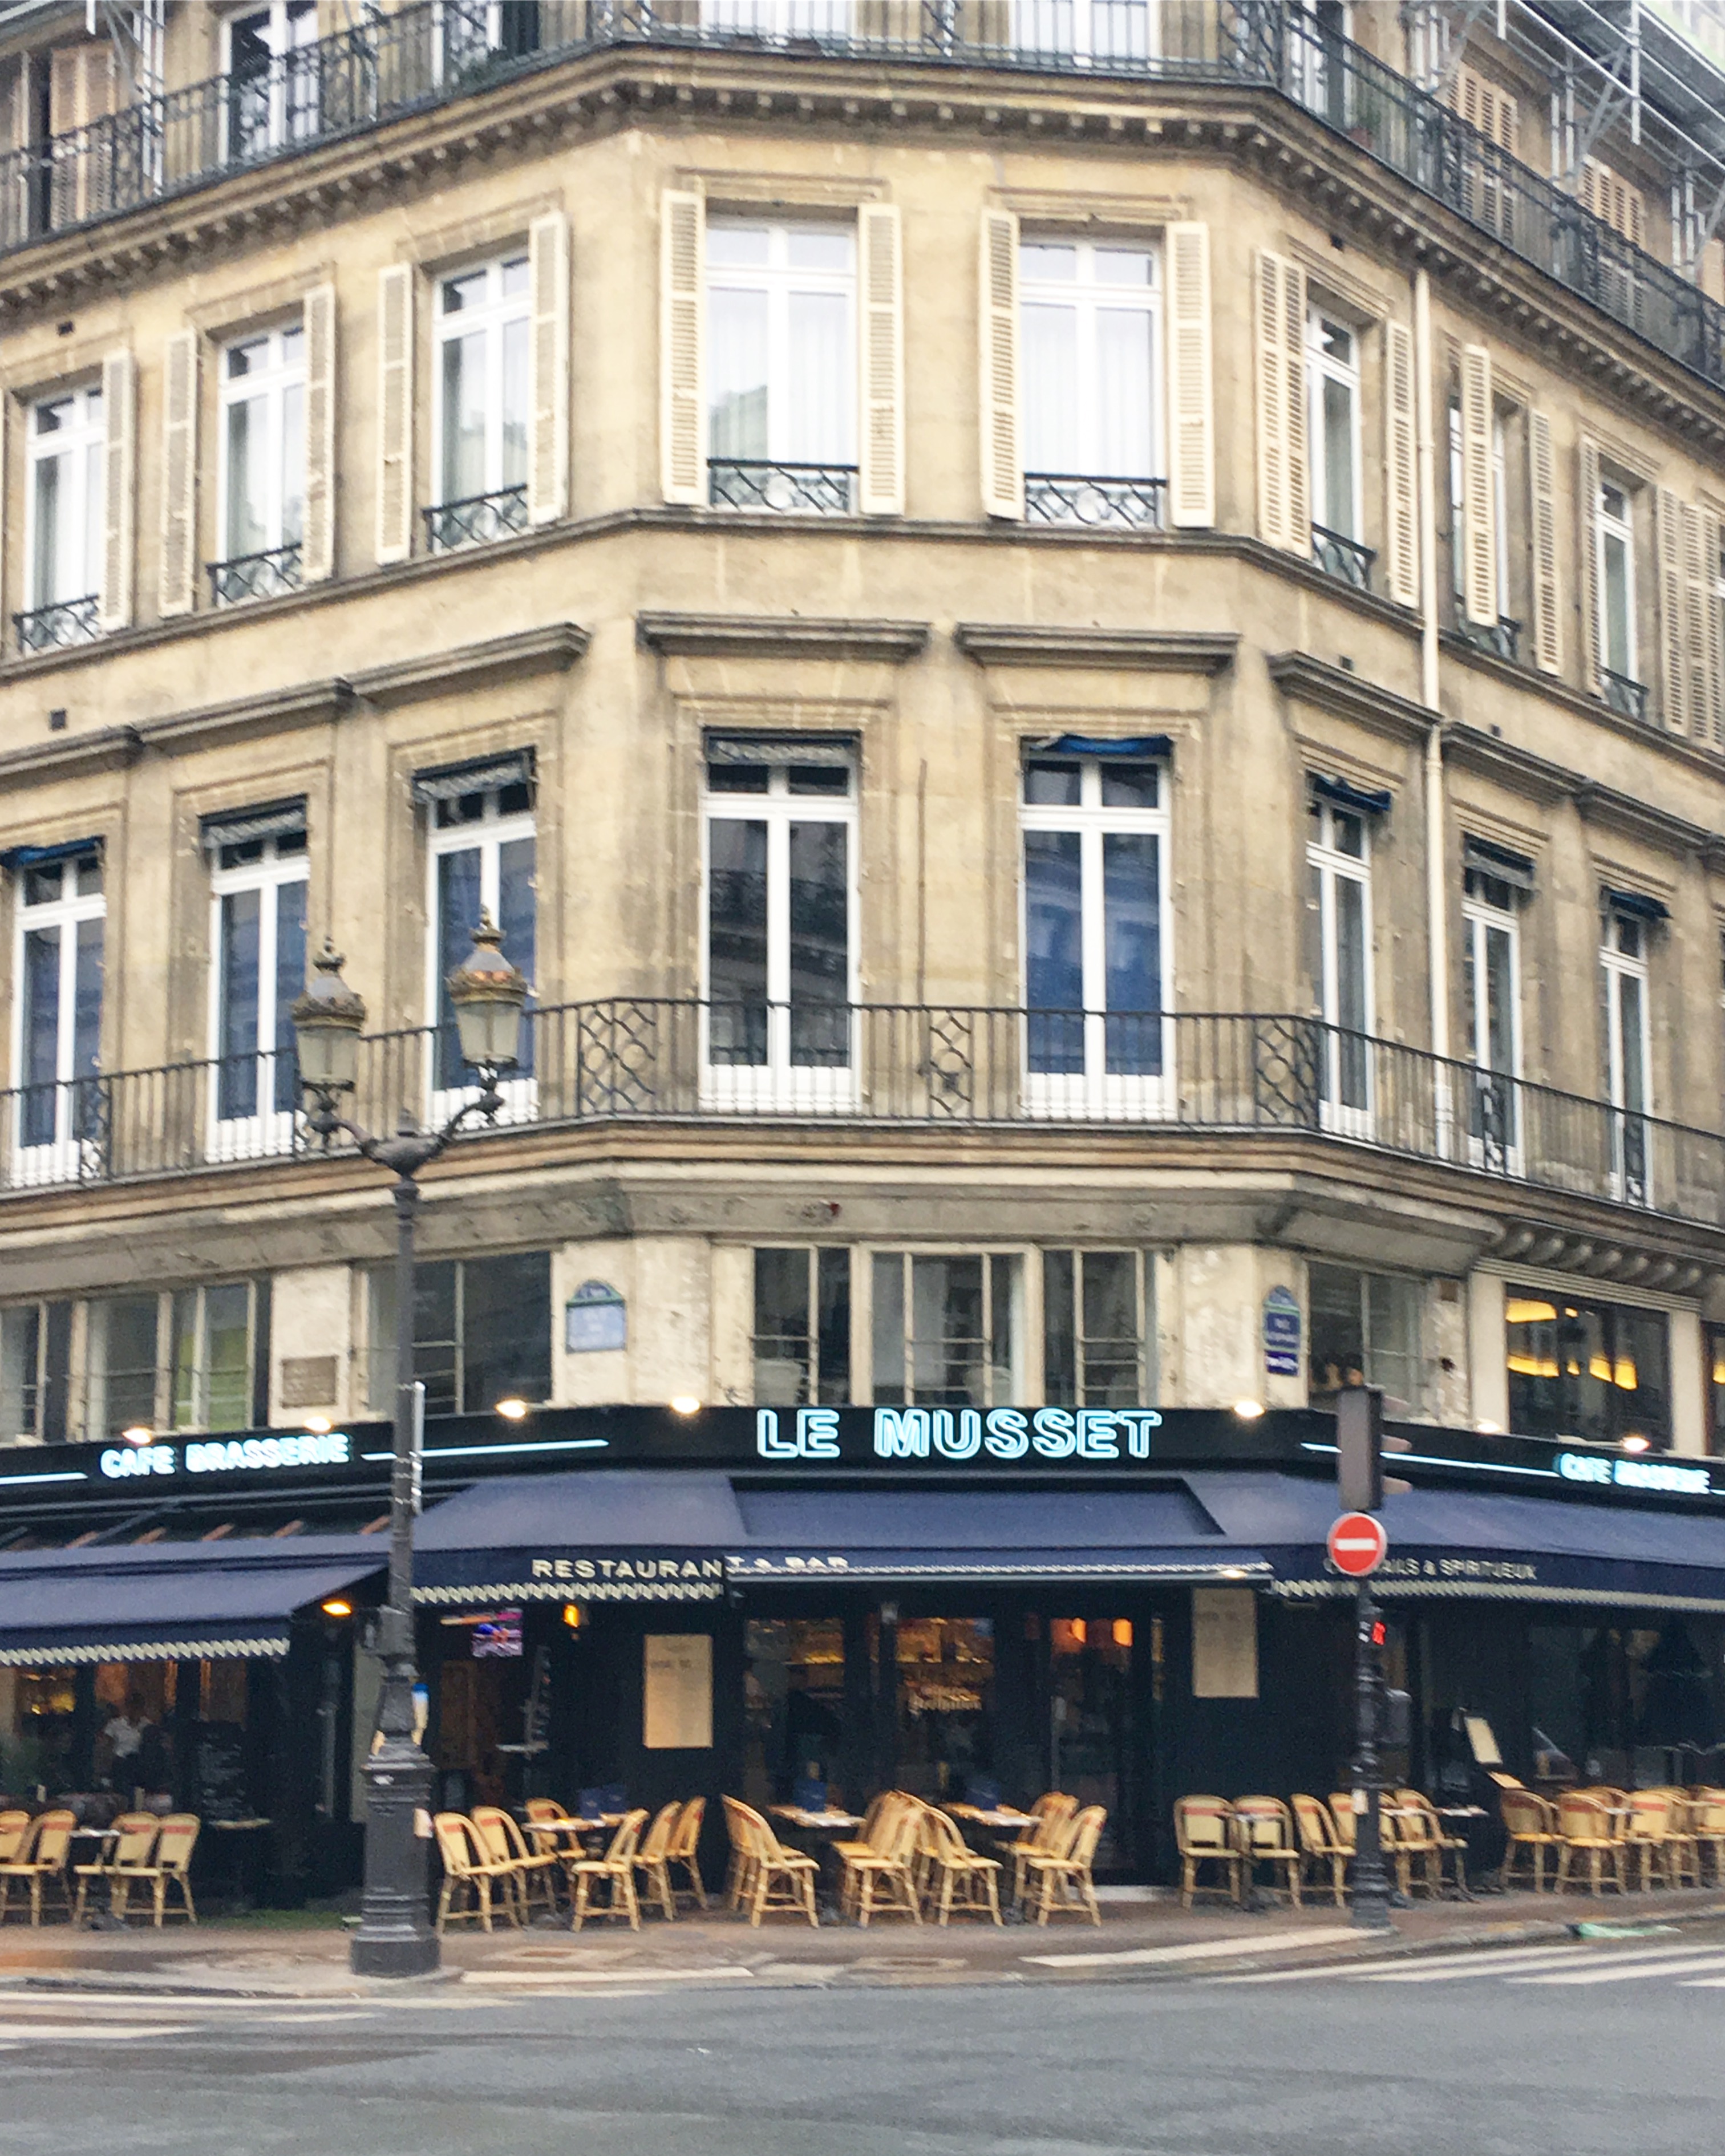 Parisian cafes